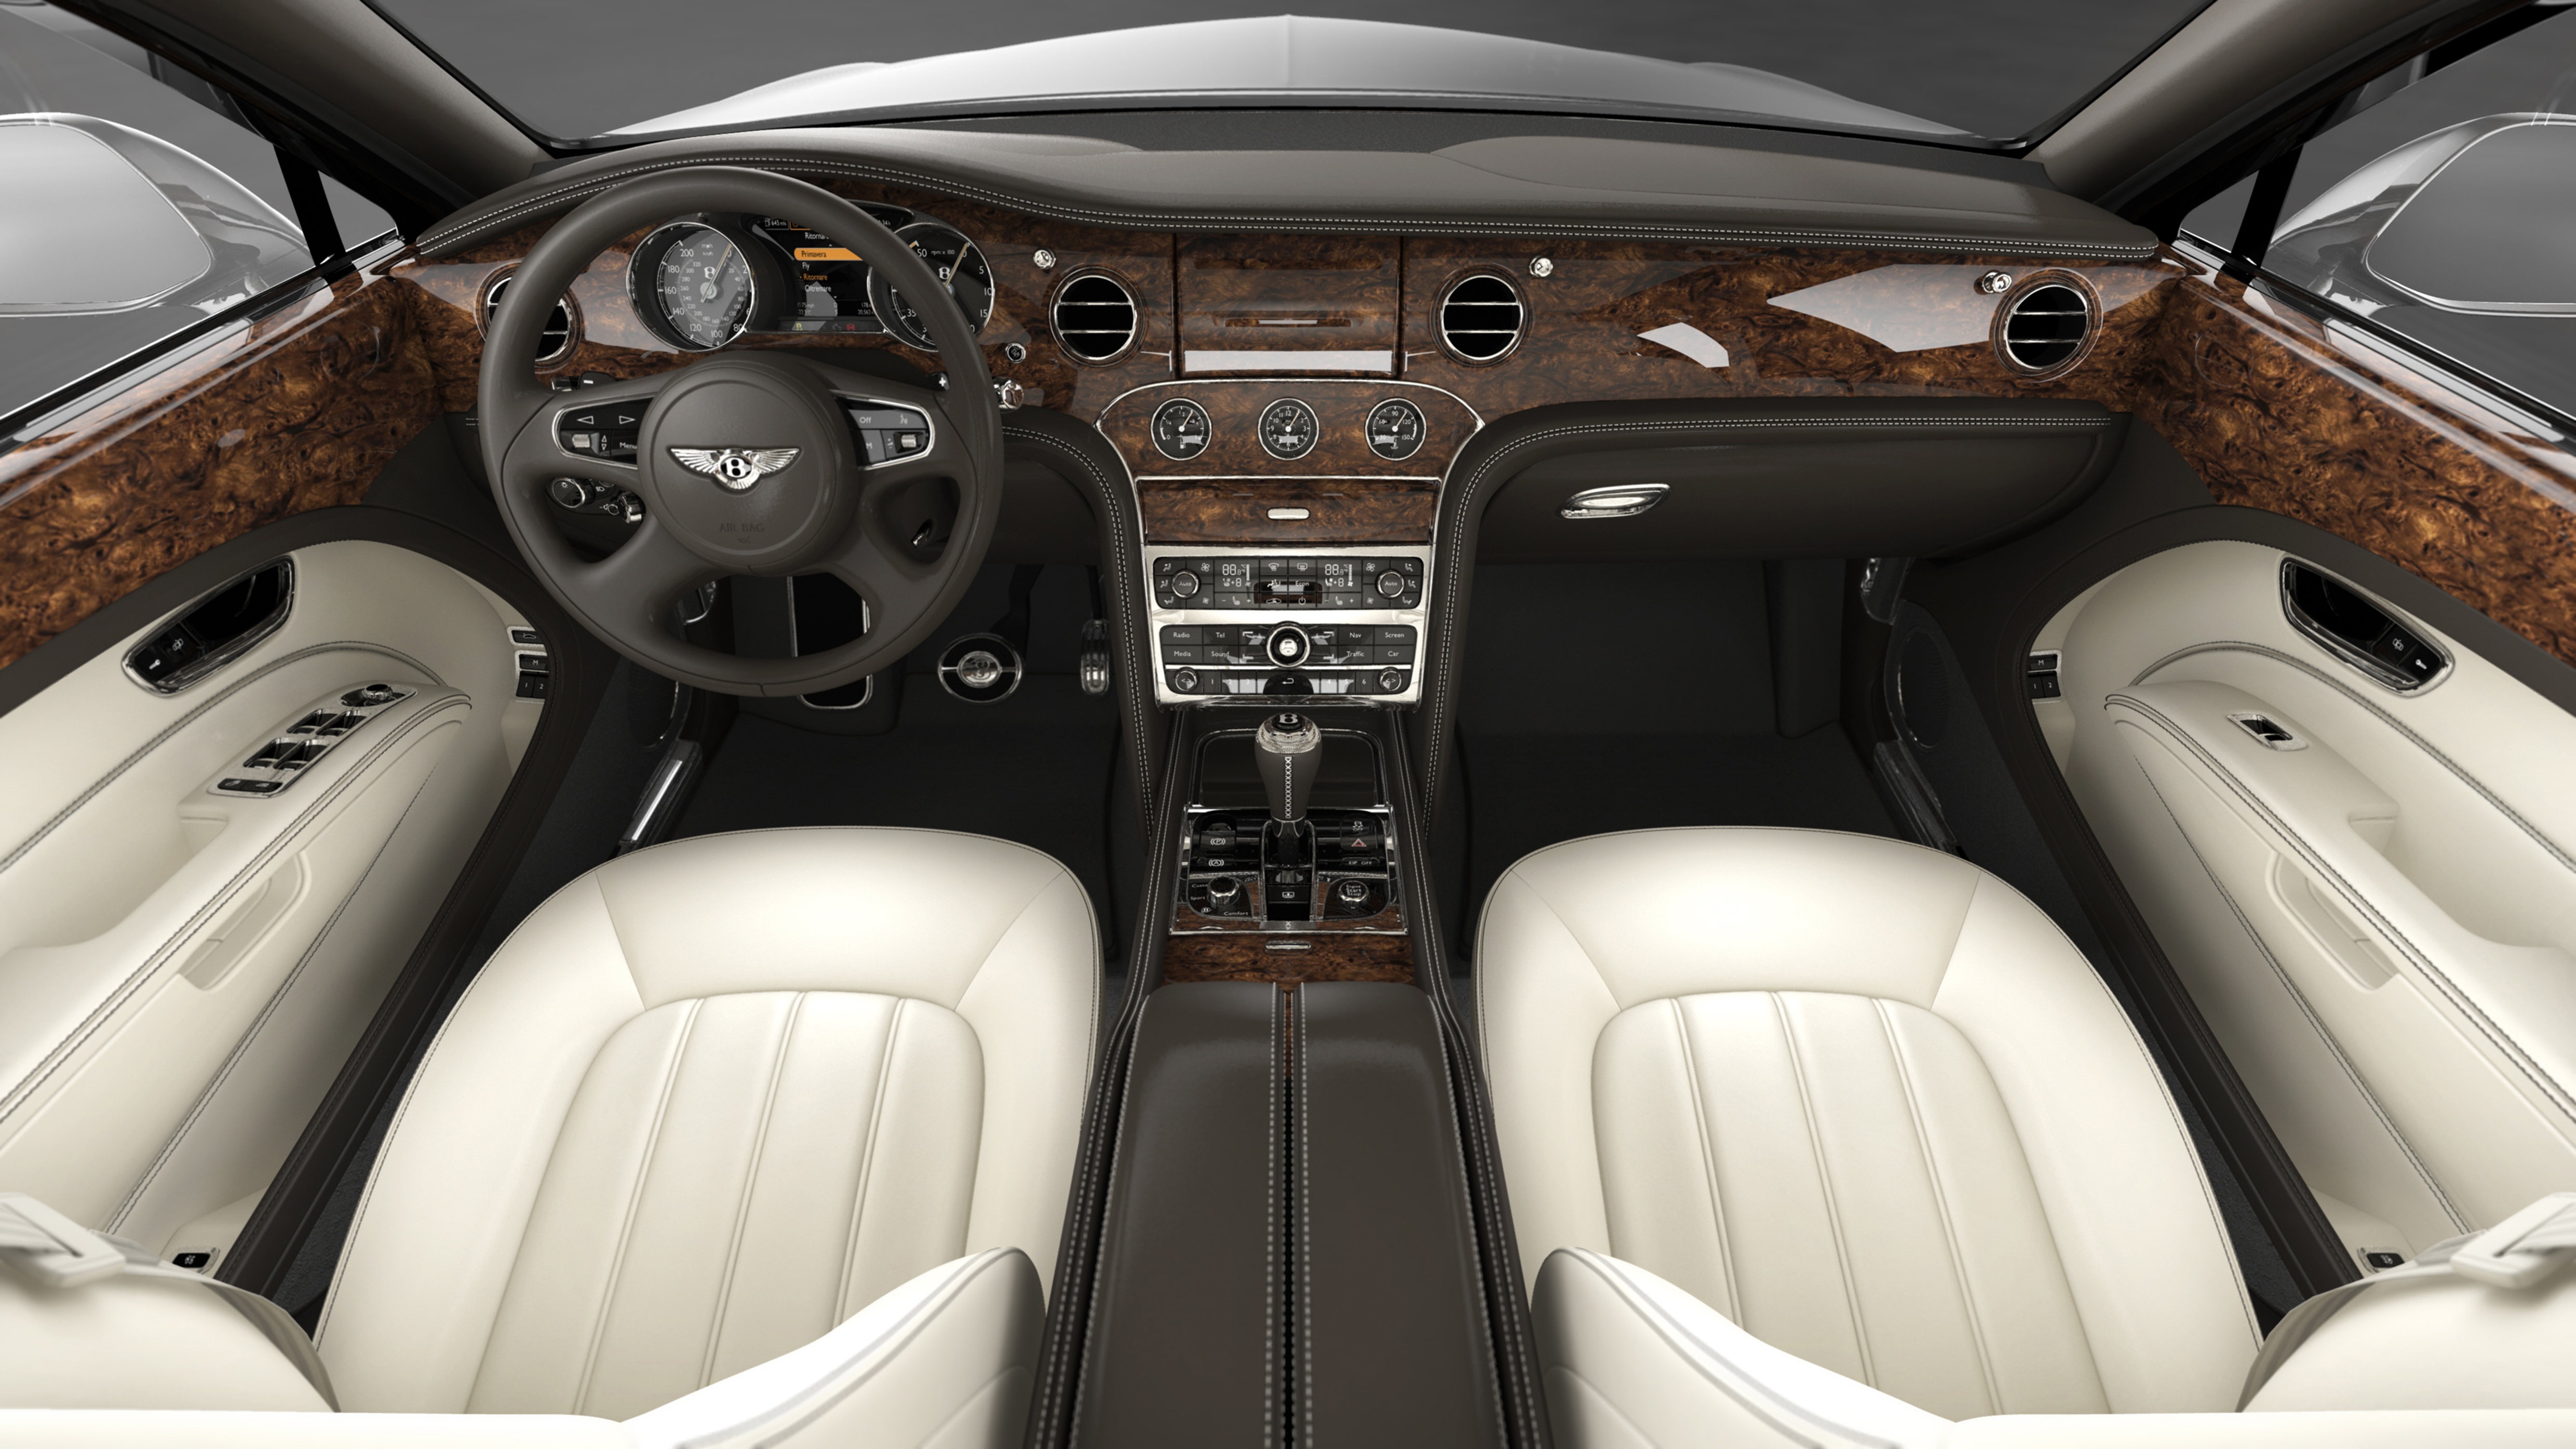 cars, interior, Bentley - desktop wallpaper